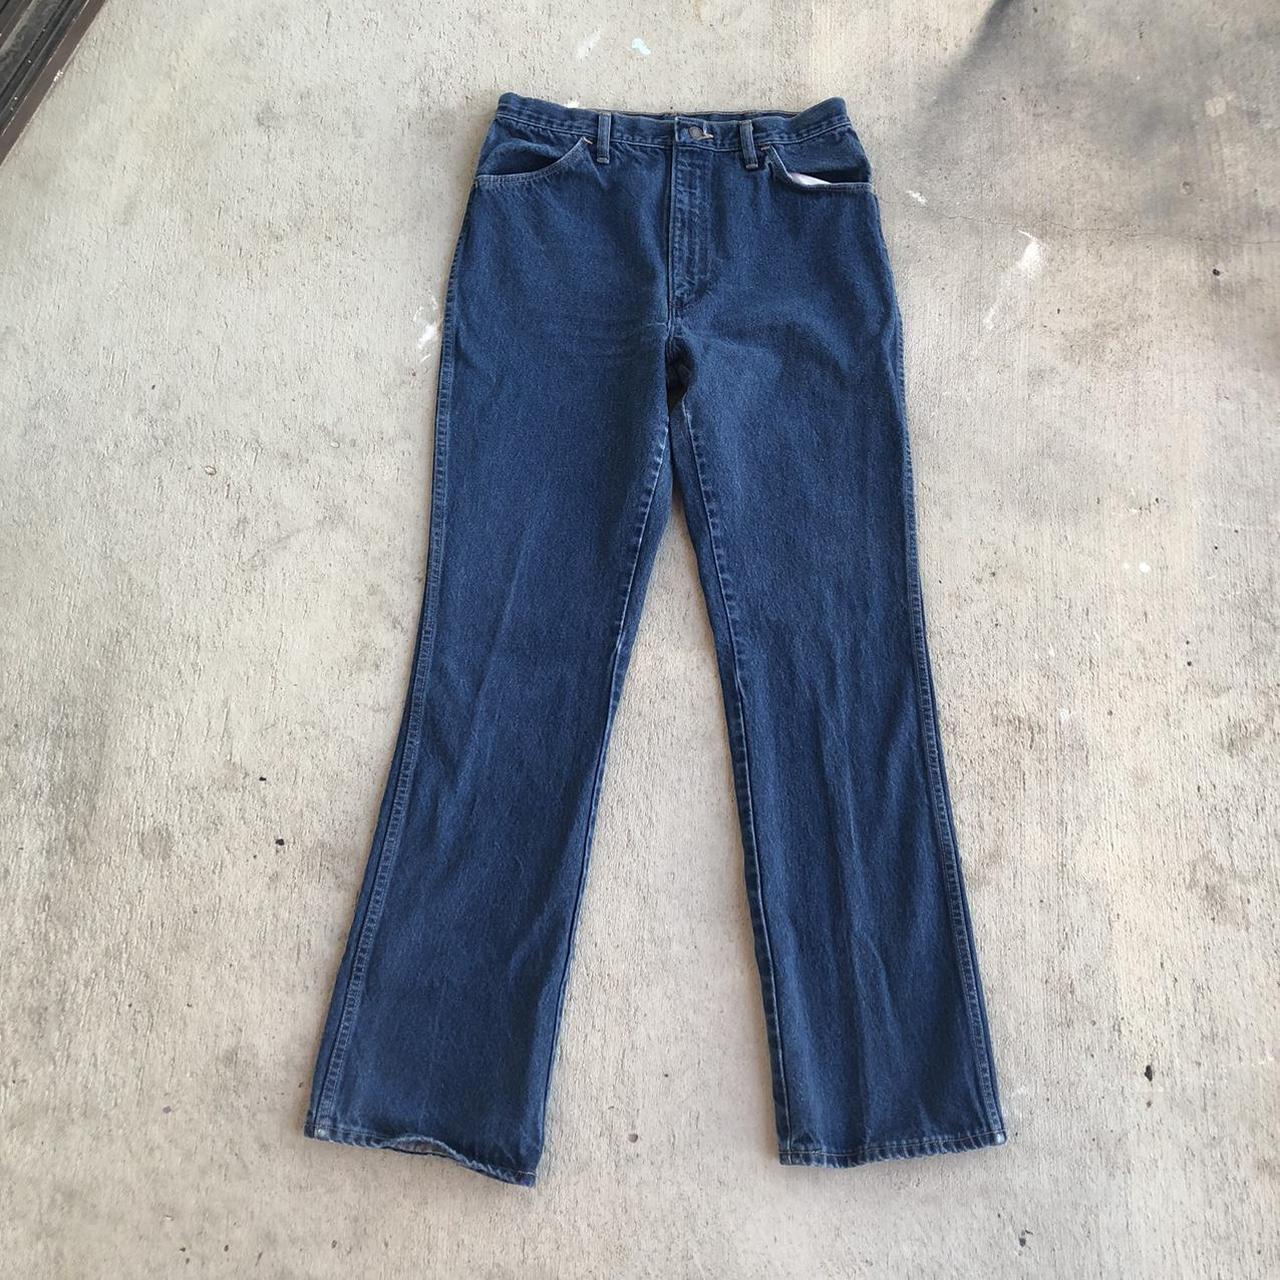 Vintage 70’s Rustler Jeans, raw denim dark wash... - Depop